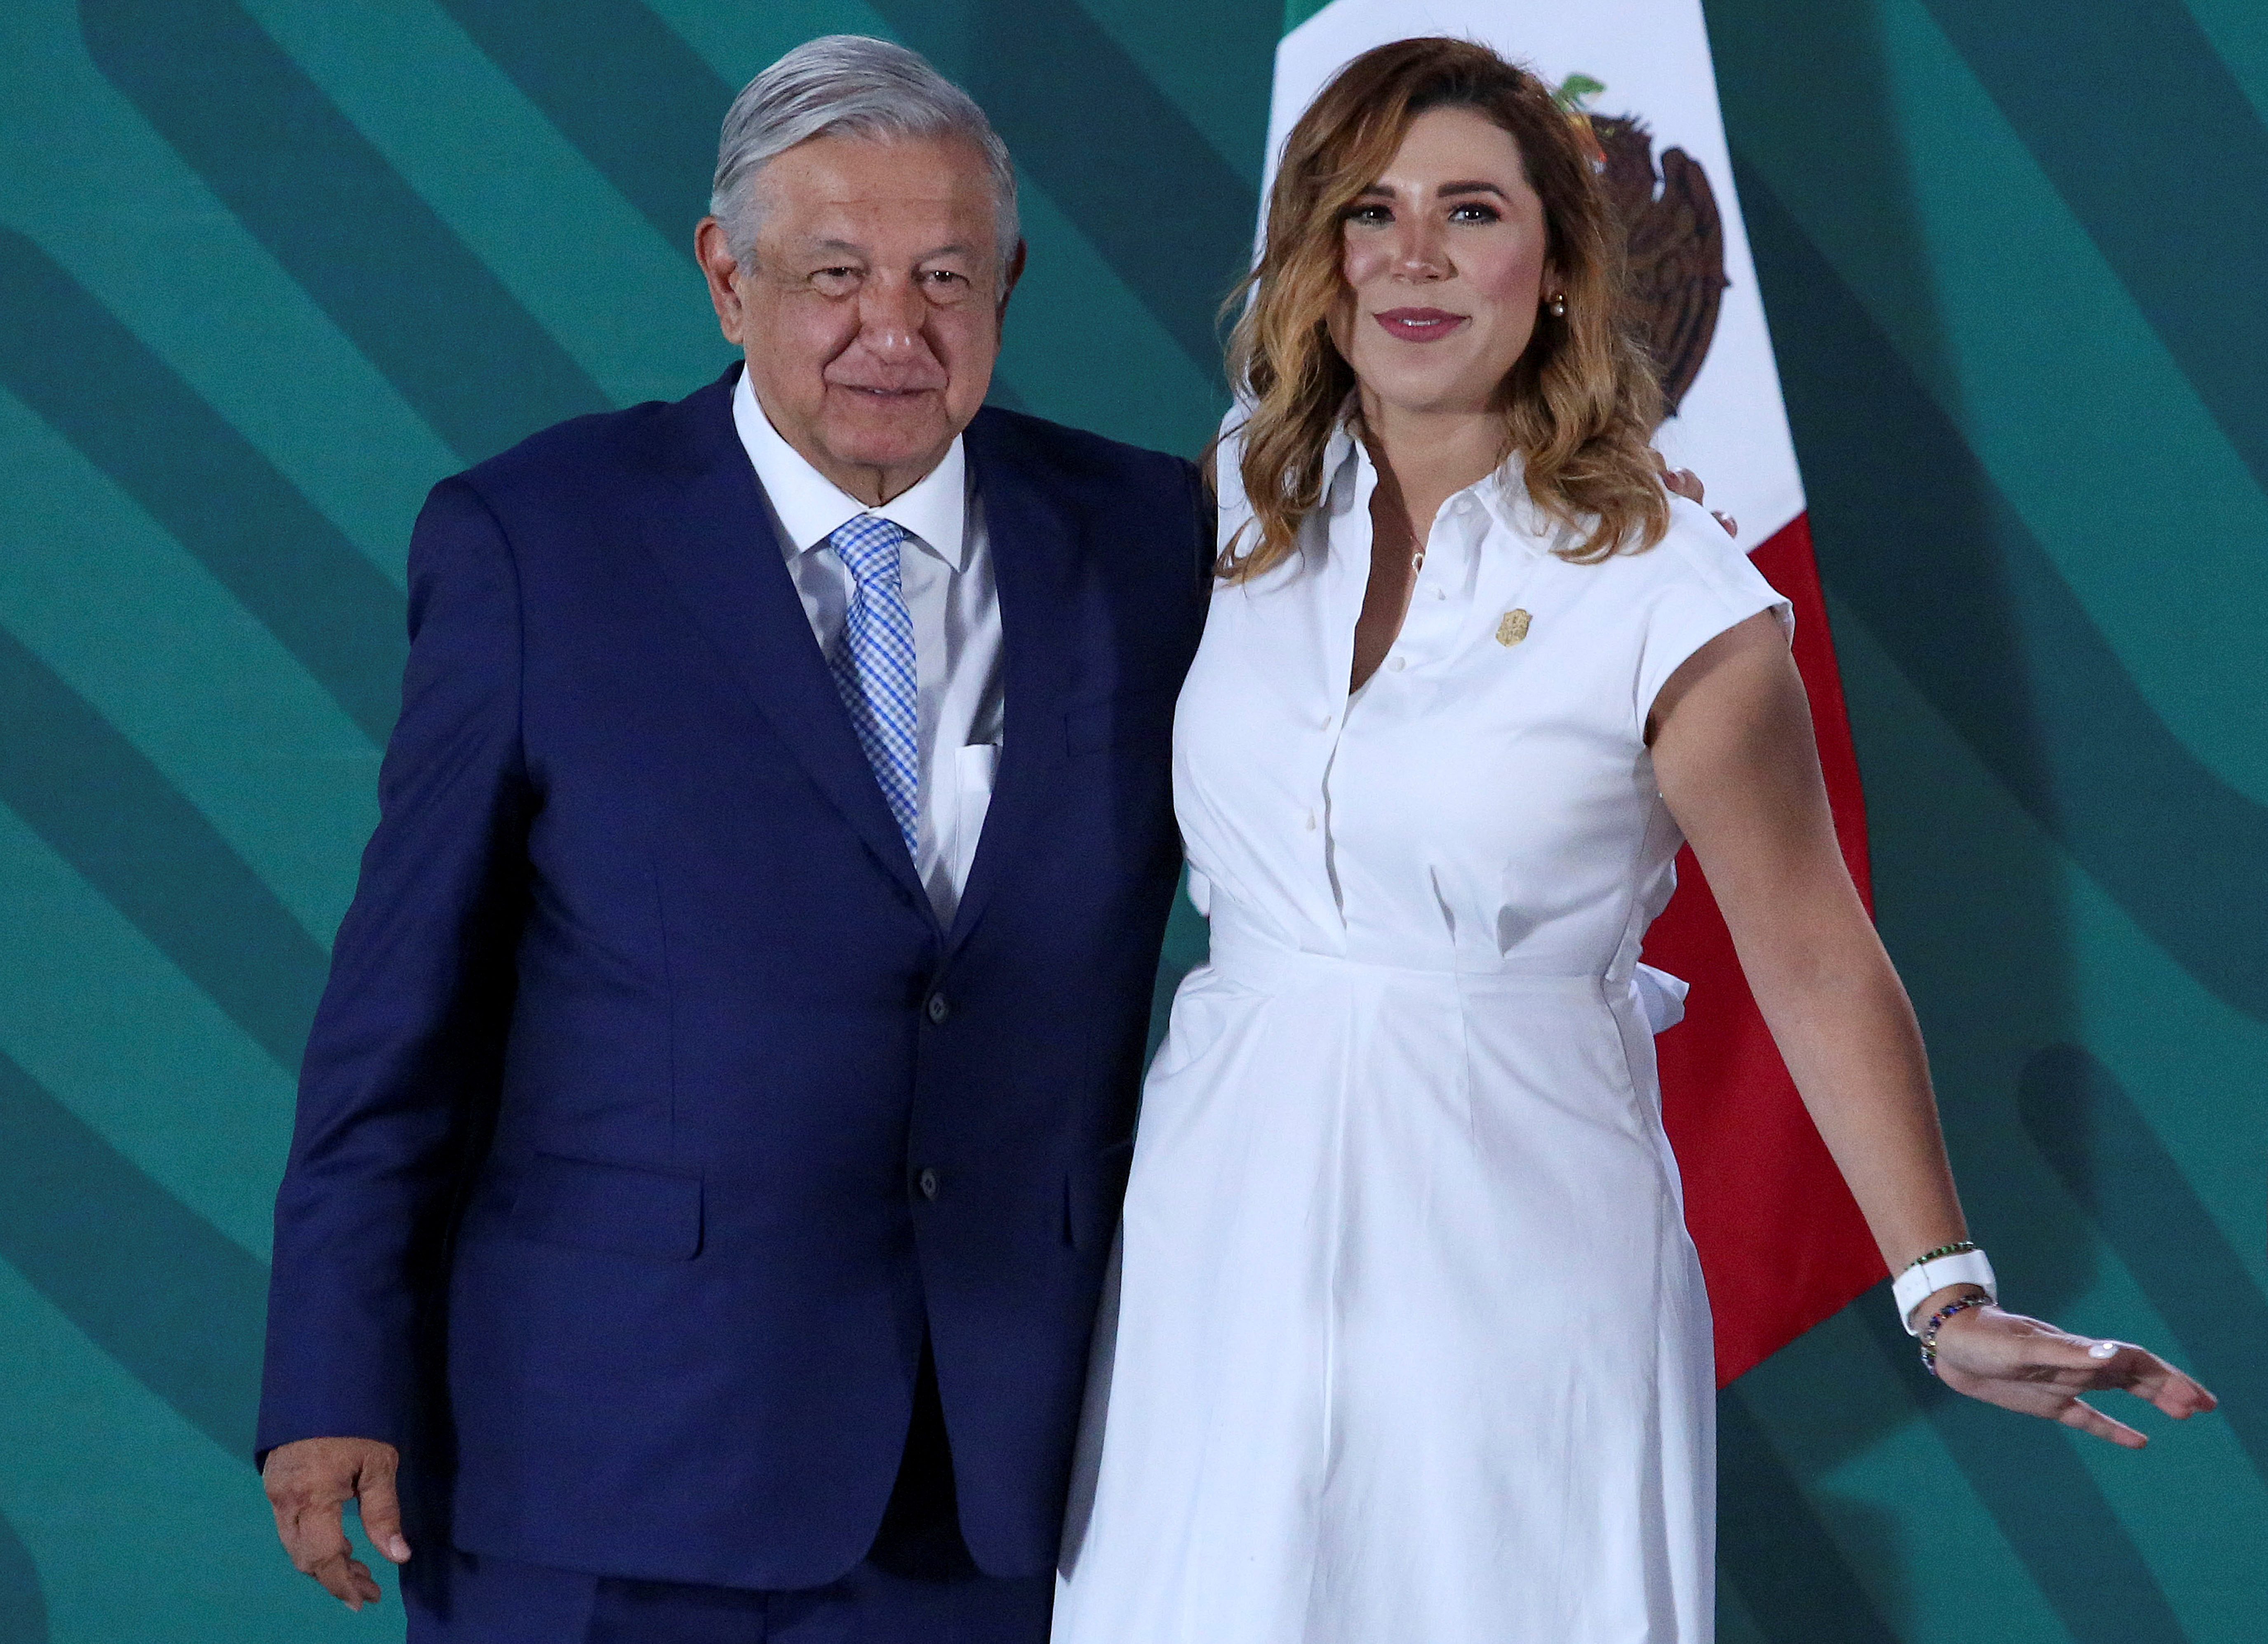 El presidente Andres Manuel Lopez Obrador posa junto a la gobernadora de Baja California, Marina del Pilar Avila Olmeda (Foto: Reuters)